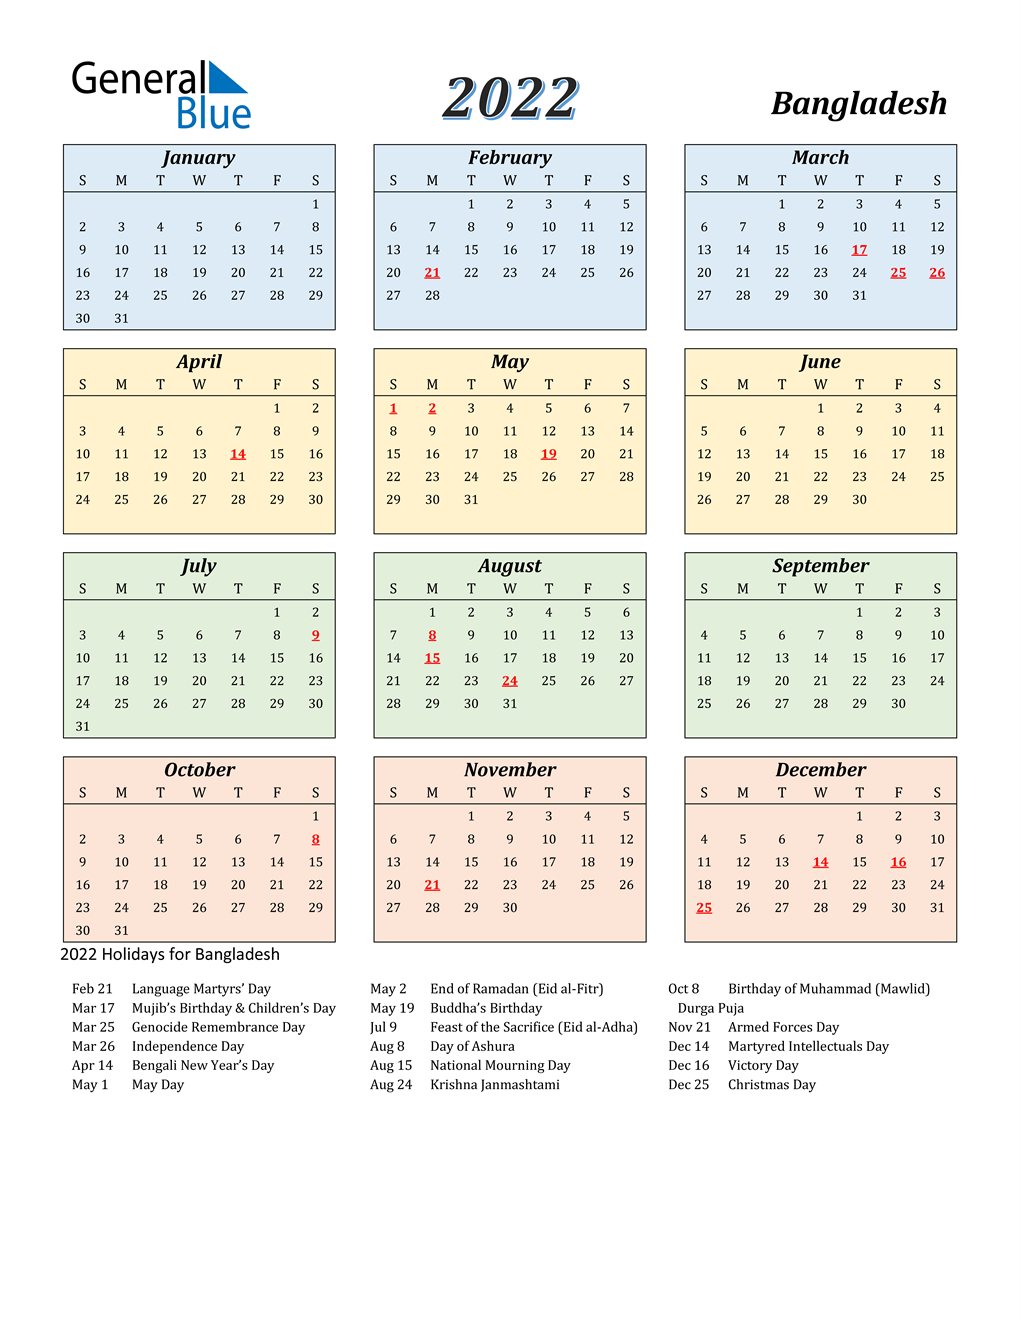 Government Calendar 2022 - February Calendar 2022-Calendar 2022 India With Holidays And Festivals